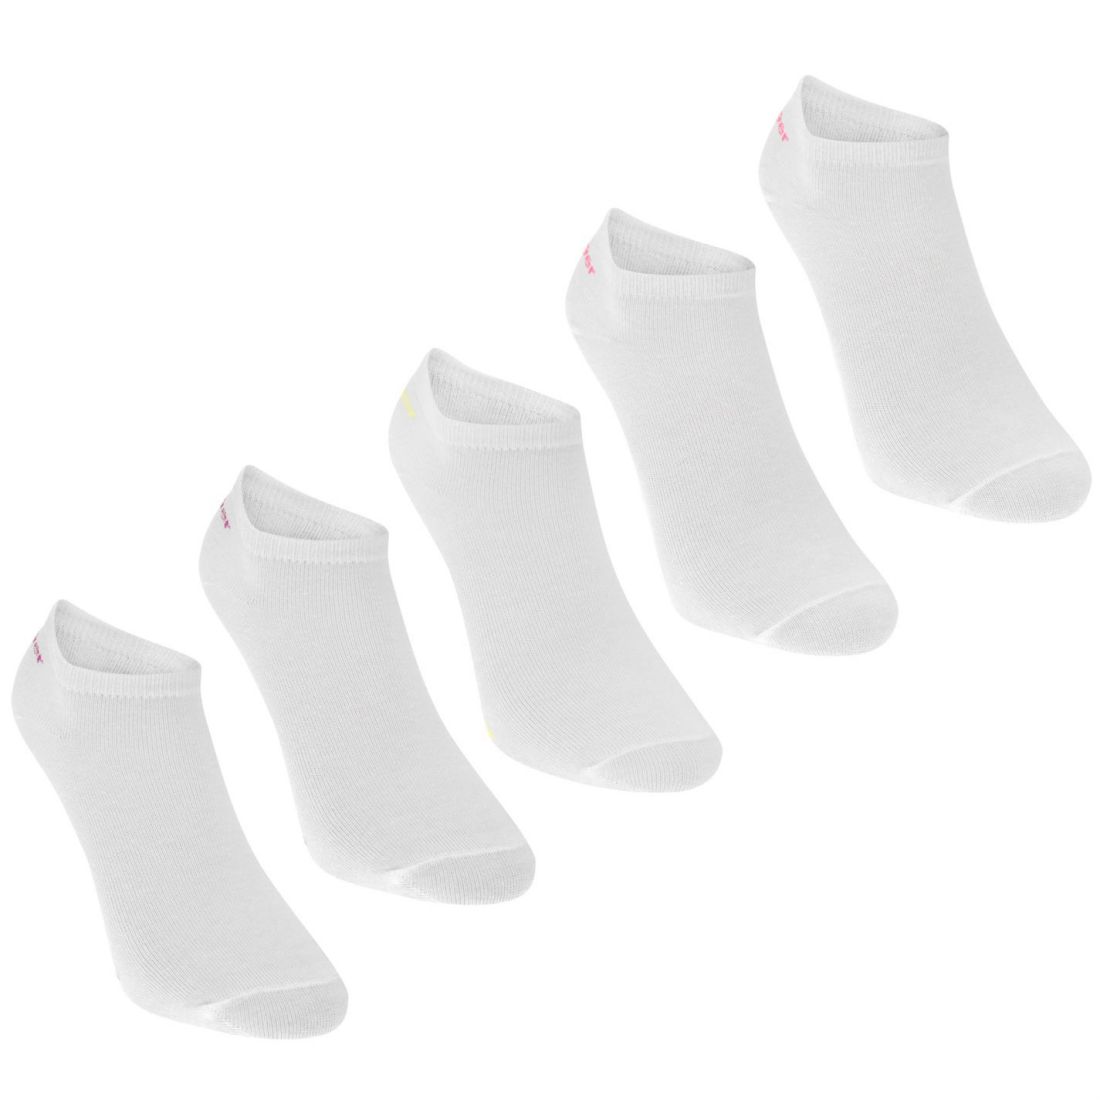 Slazenger Kids Boys 5 Pack Trainer Socks Junior | eBay